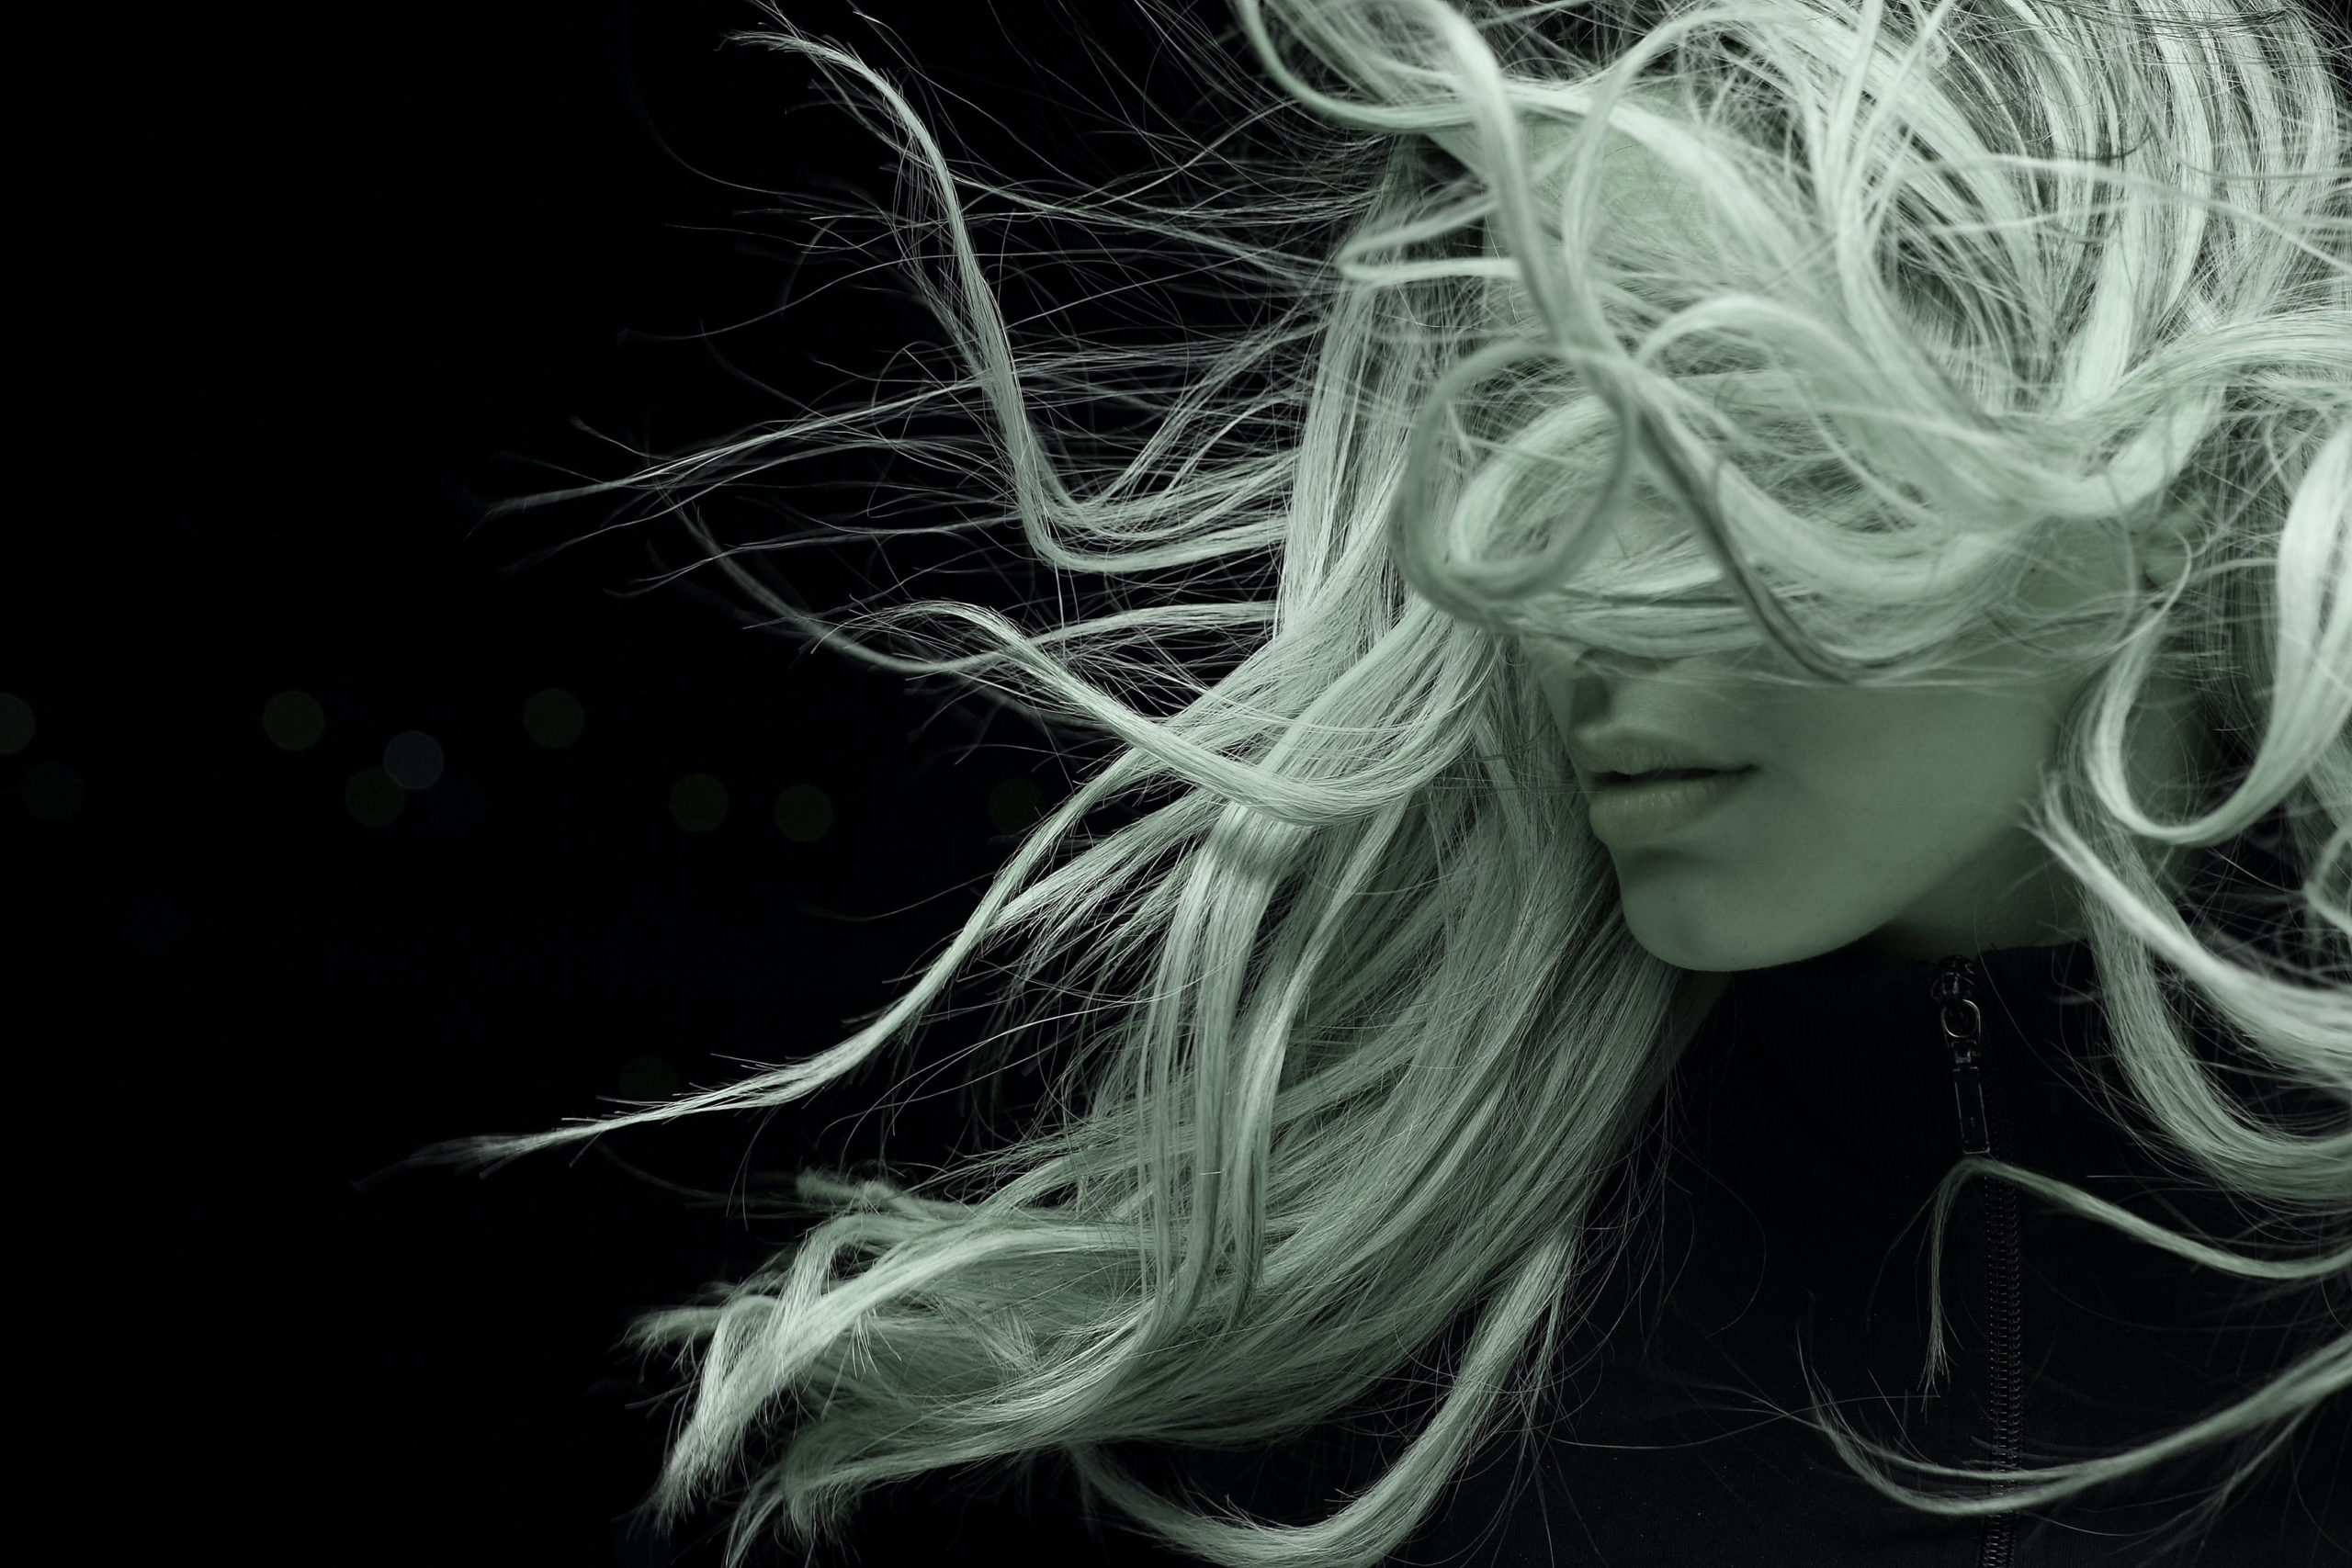 Imagen de fondo en blanco y negro de una mujer con el pelo alborotado por el viento